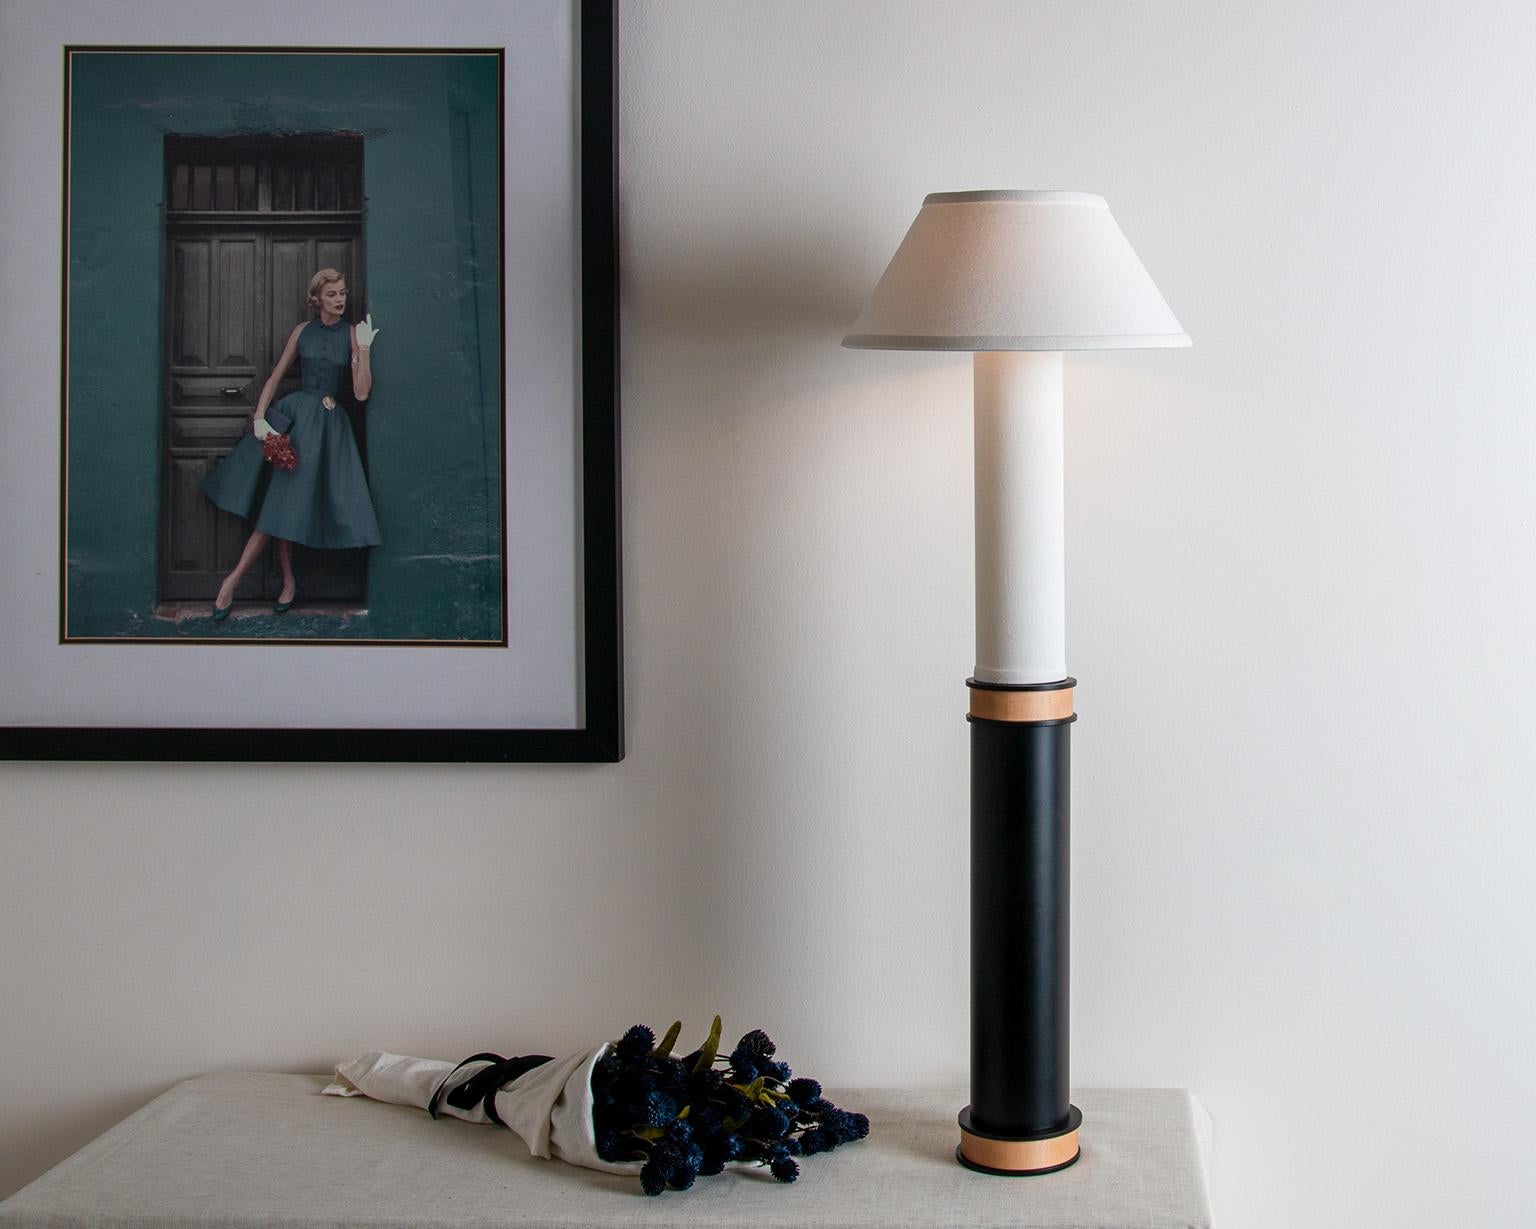 Cette lampe majestueuse présente un contraste spectaculaire de textures et de matériaux. D'une hauteur de près d'un mètre, la lampe à colonne en lin et en acier a une présence prépondérante. Inspirée de la lampe Bouillotte du XVIIIe siècle, cette